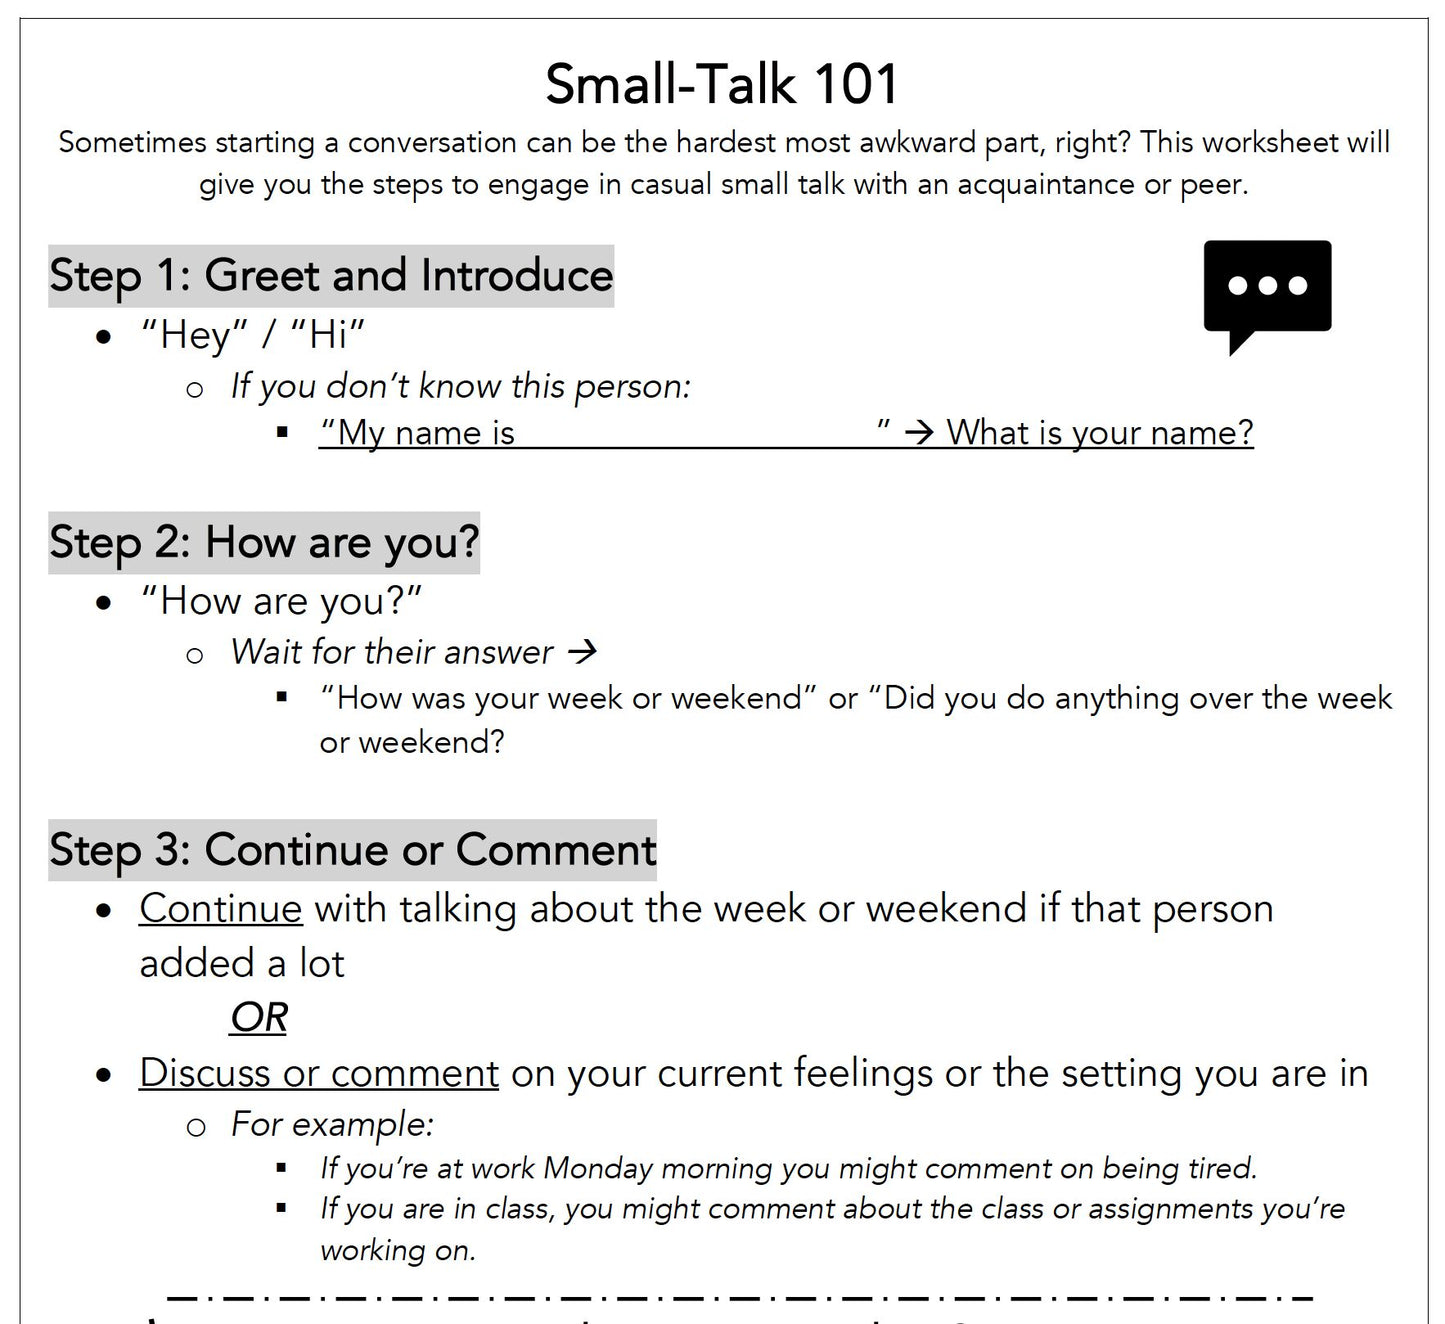 Small Talk 101